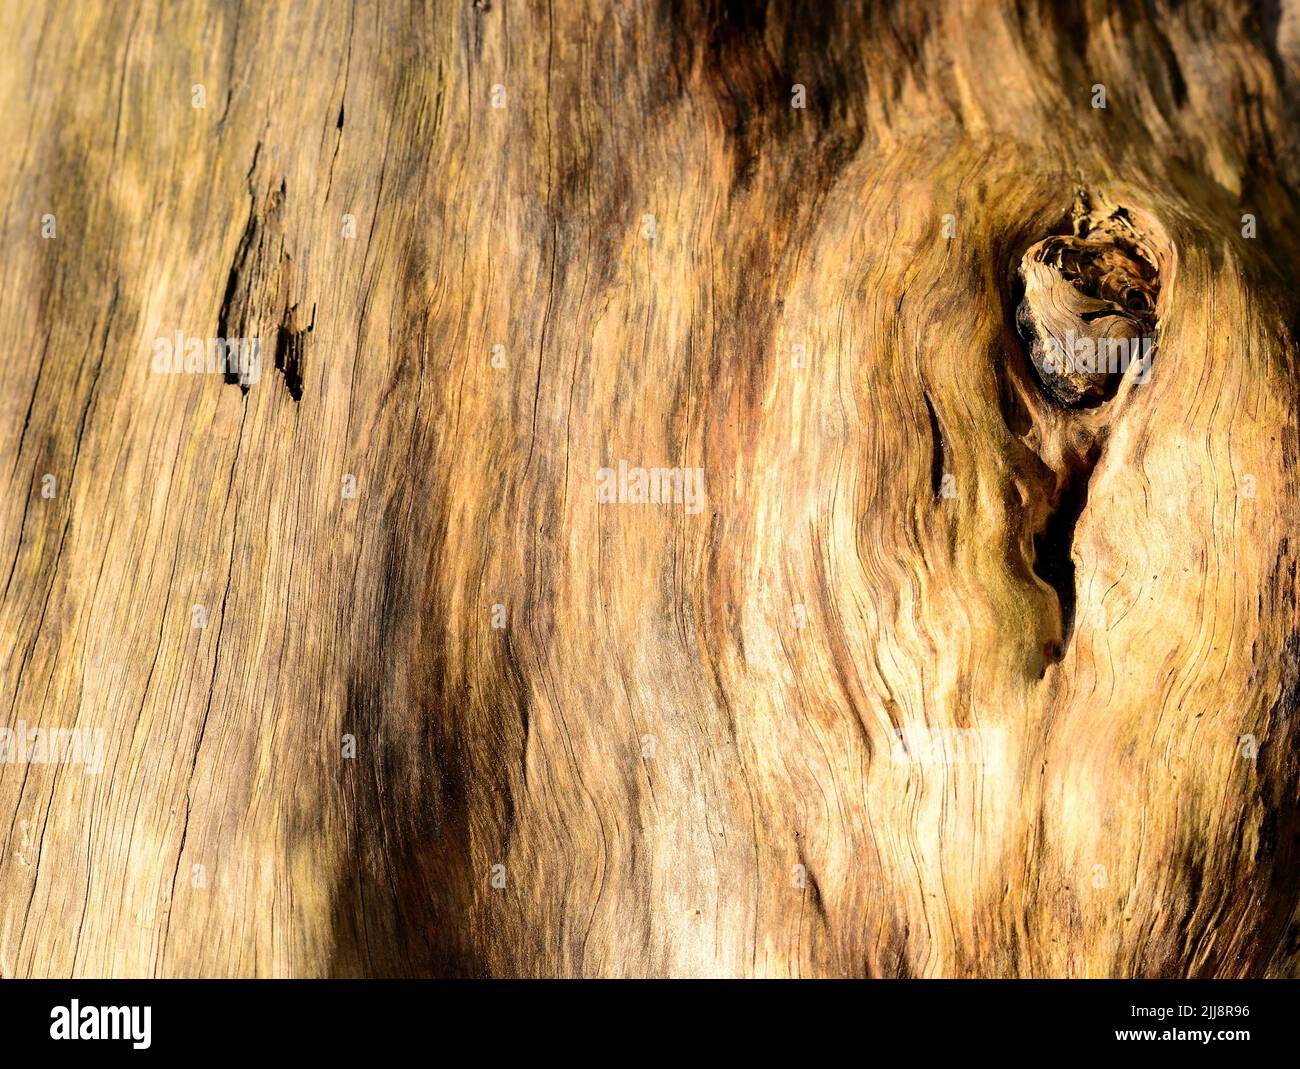 Markings on a fallen tree trunk. Stock Photo